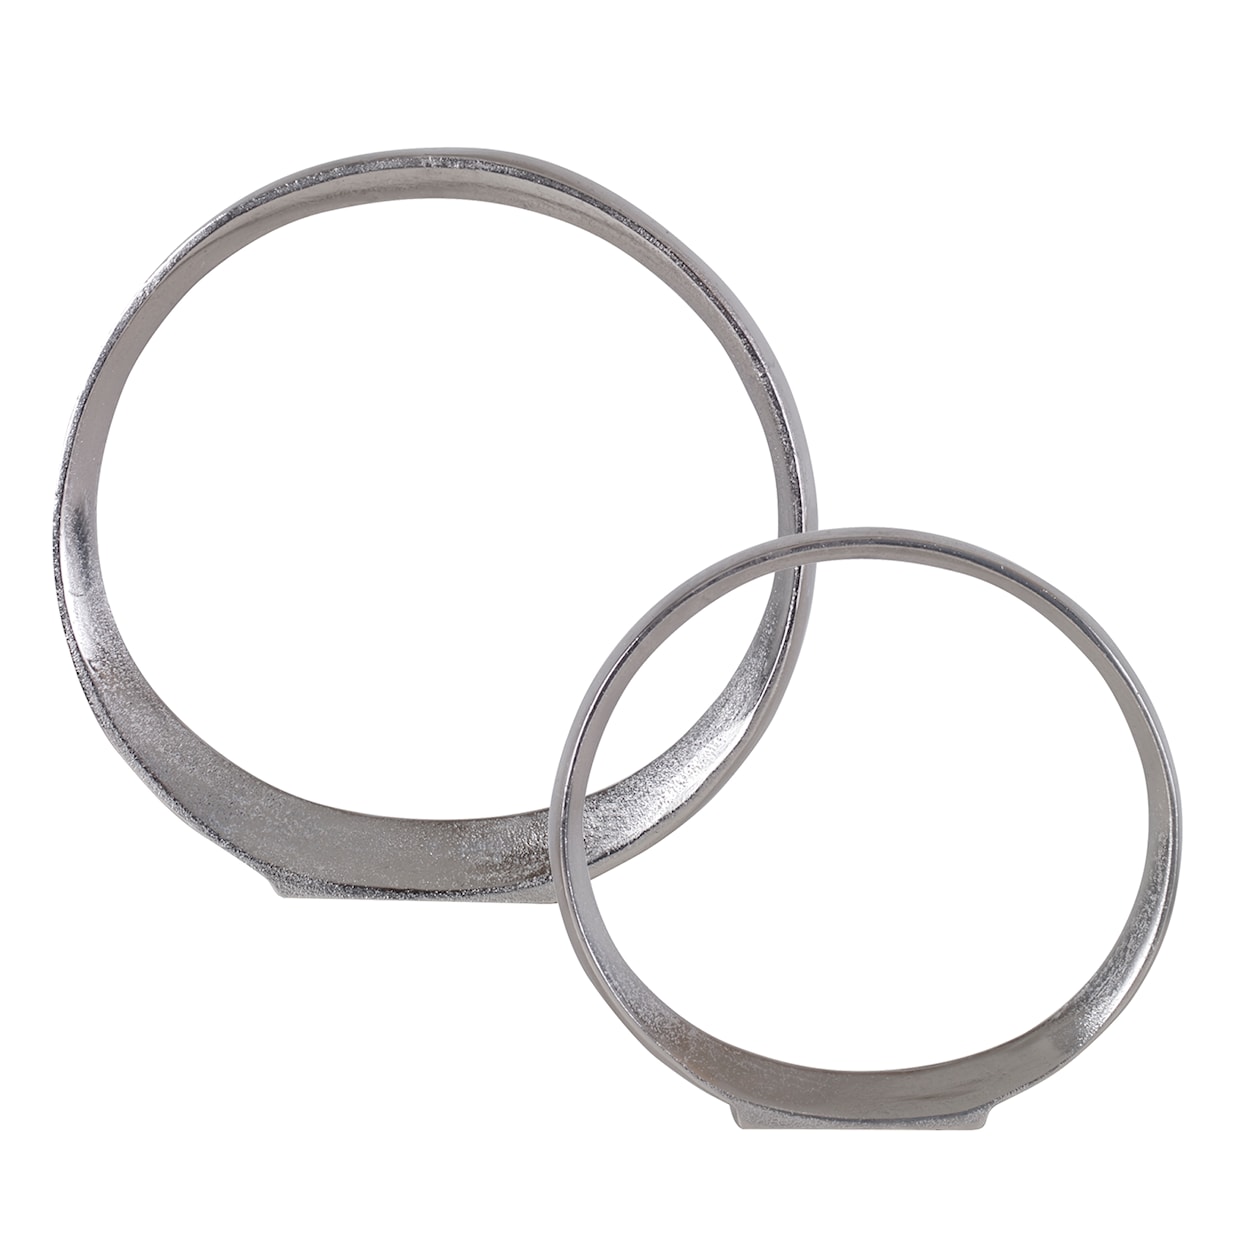 Uttermost Orbits Orbits Nickel Ring Sculptures S/2